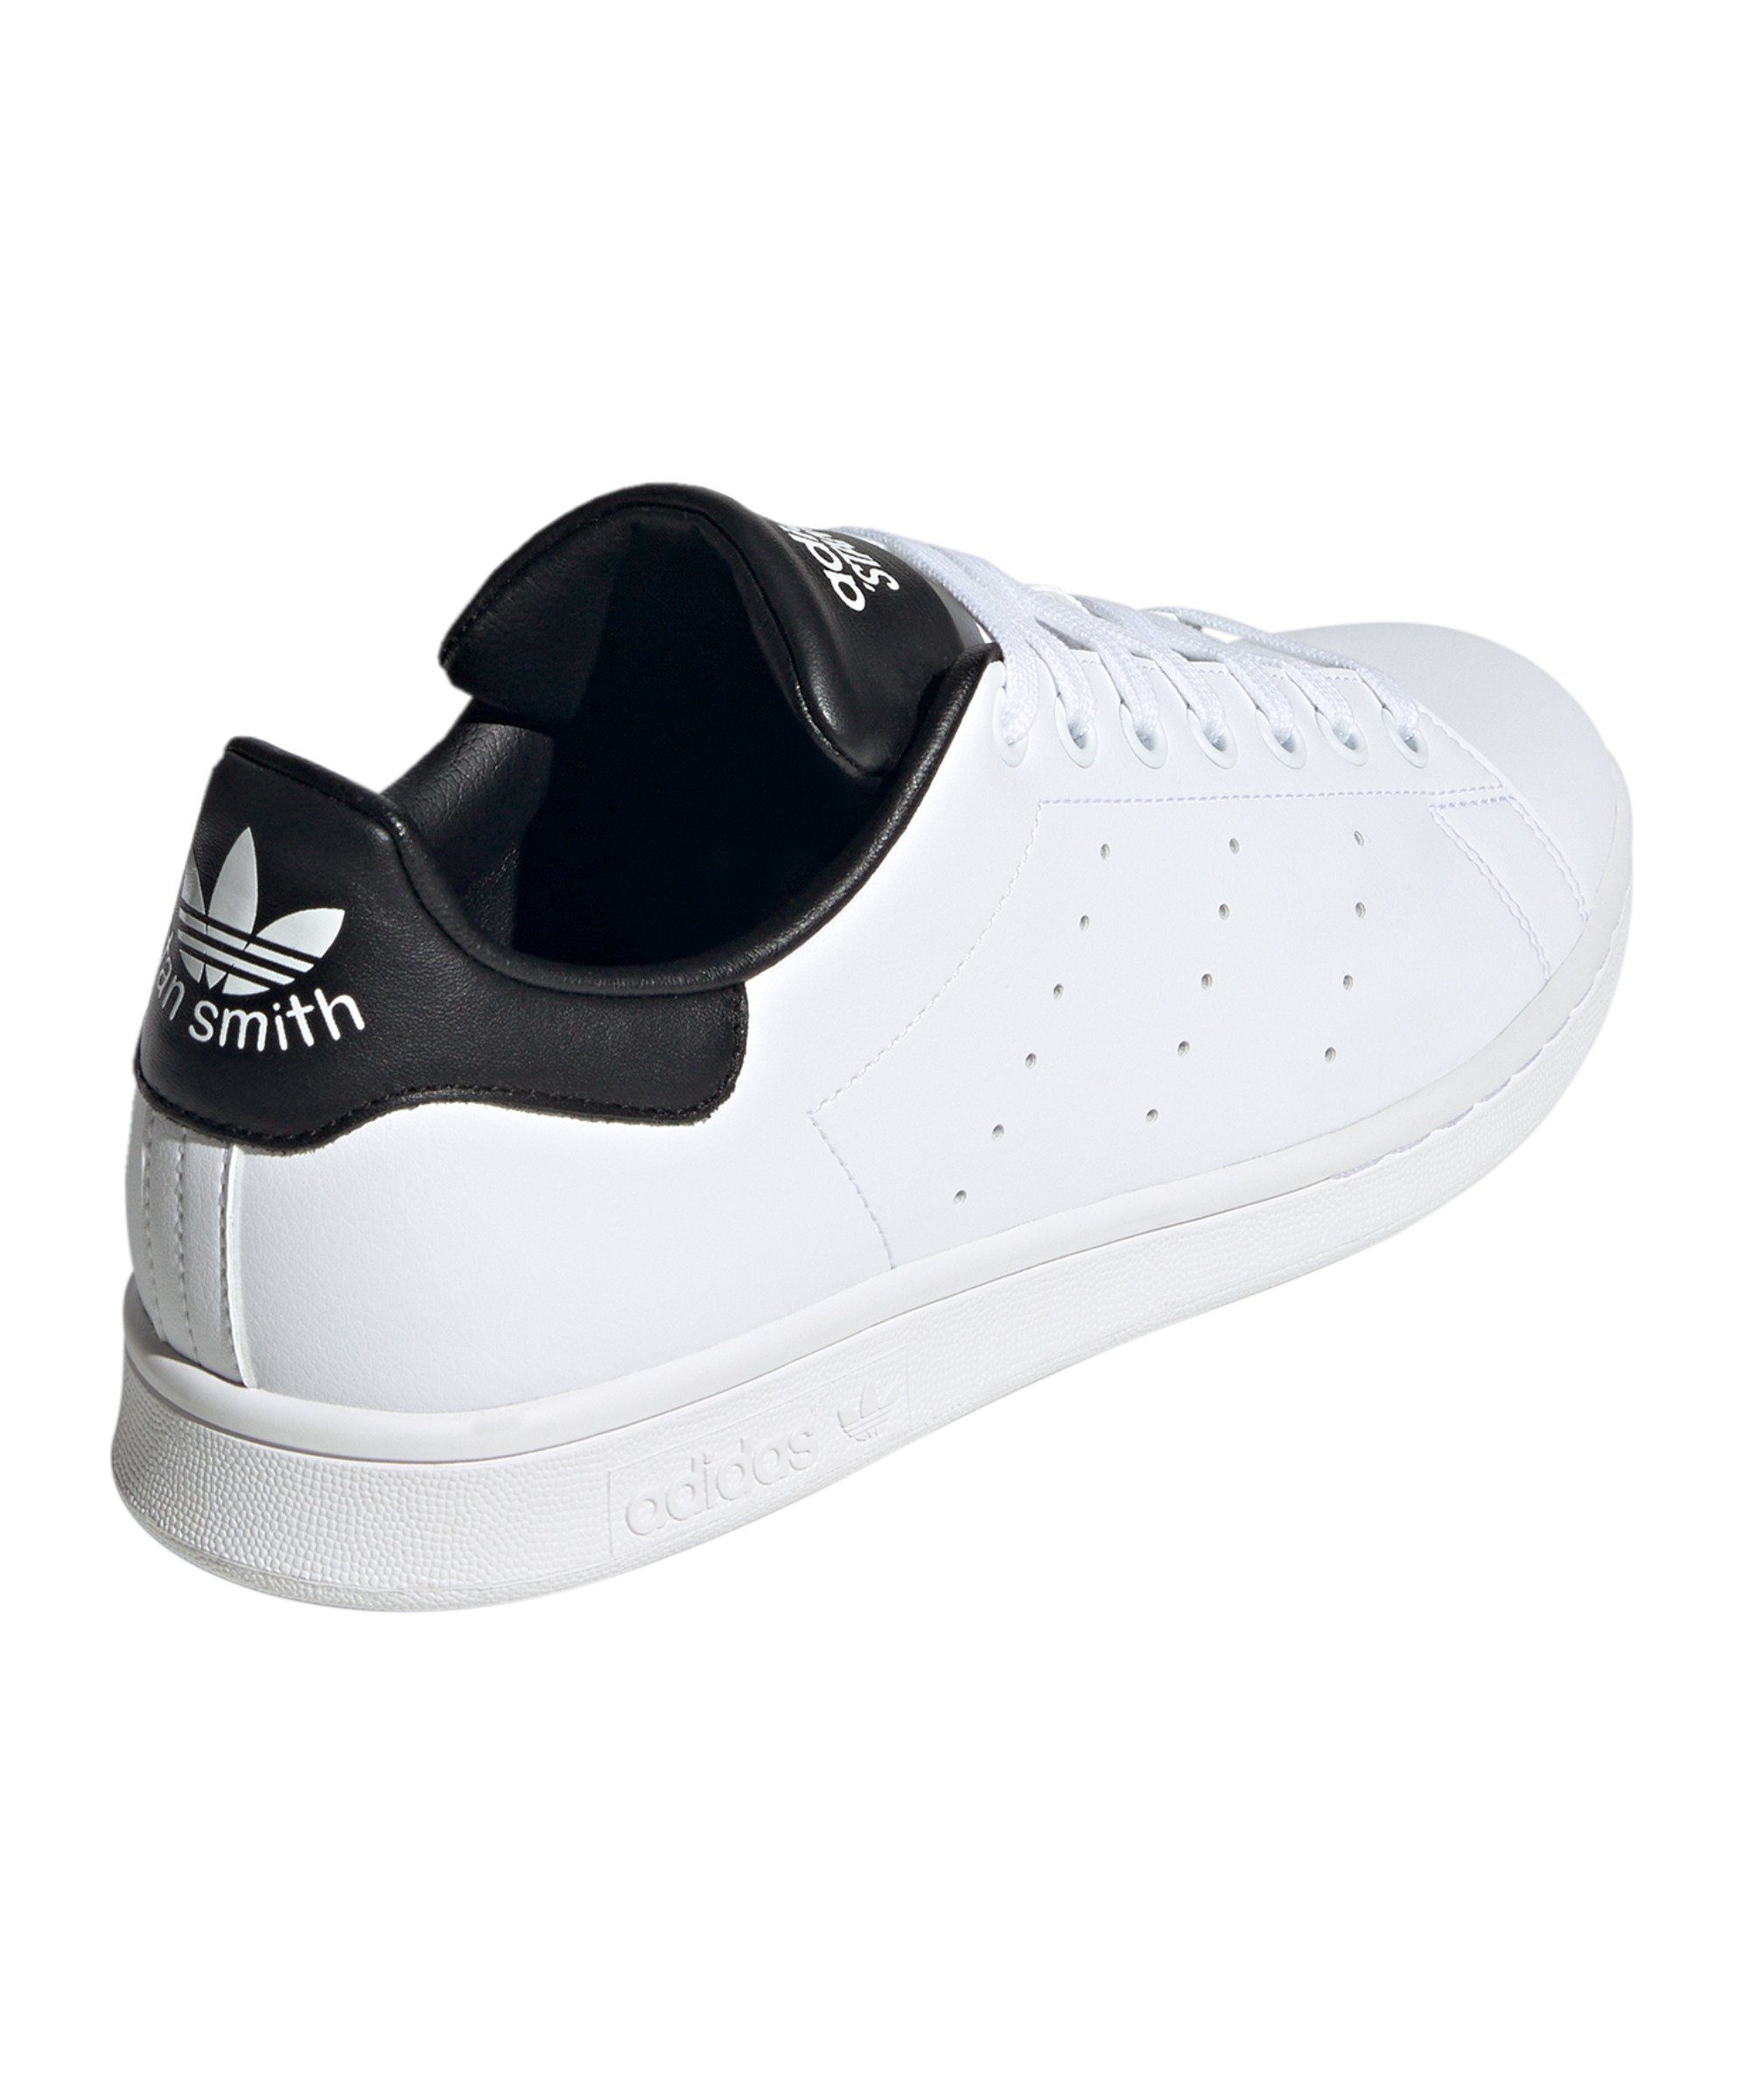 Originals adidas Sneaker Smith Stan